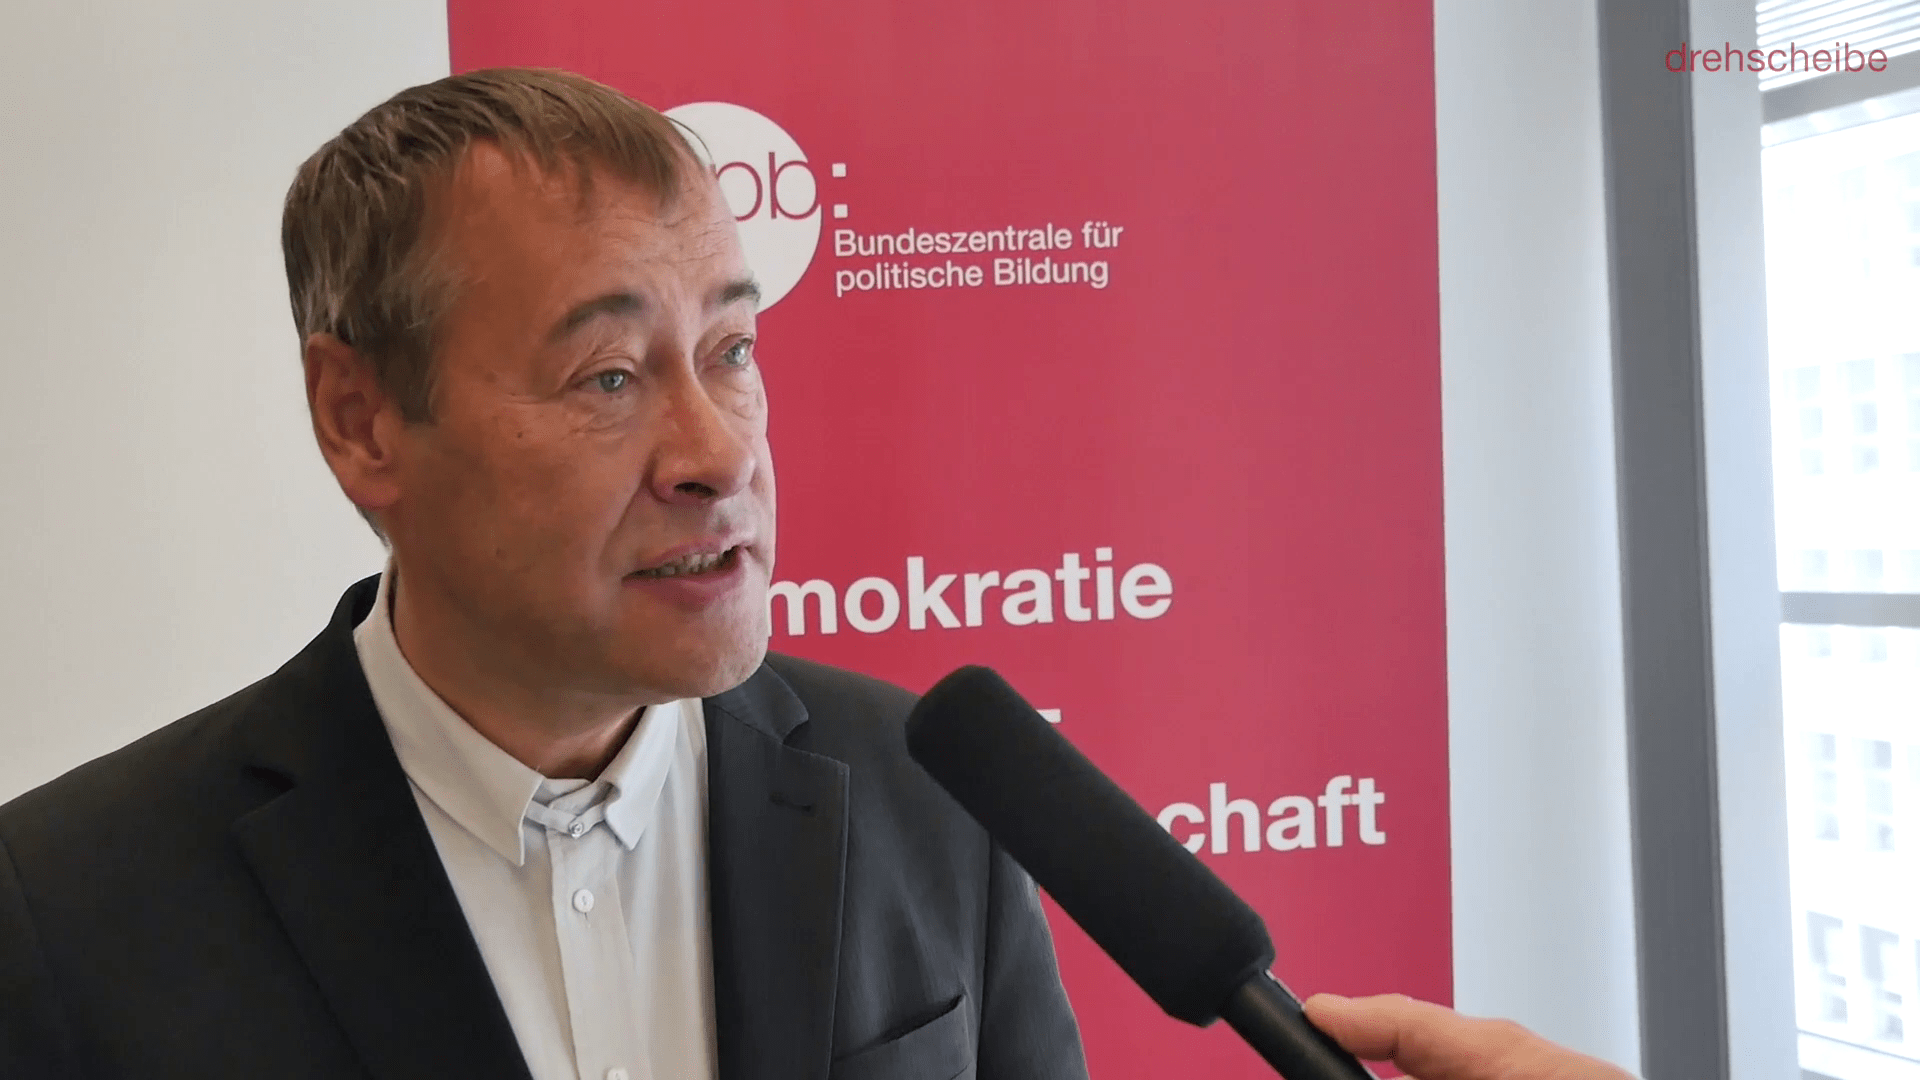 2019 ist ein Superwahljahr. Thomas Krüger im Gespräch.